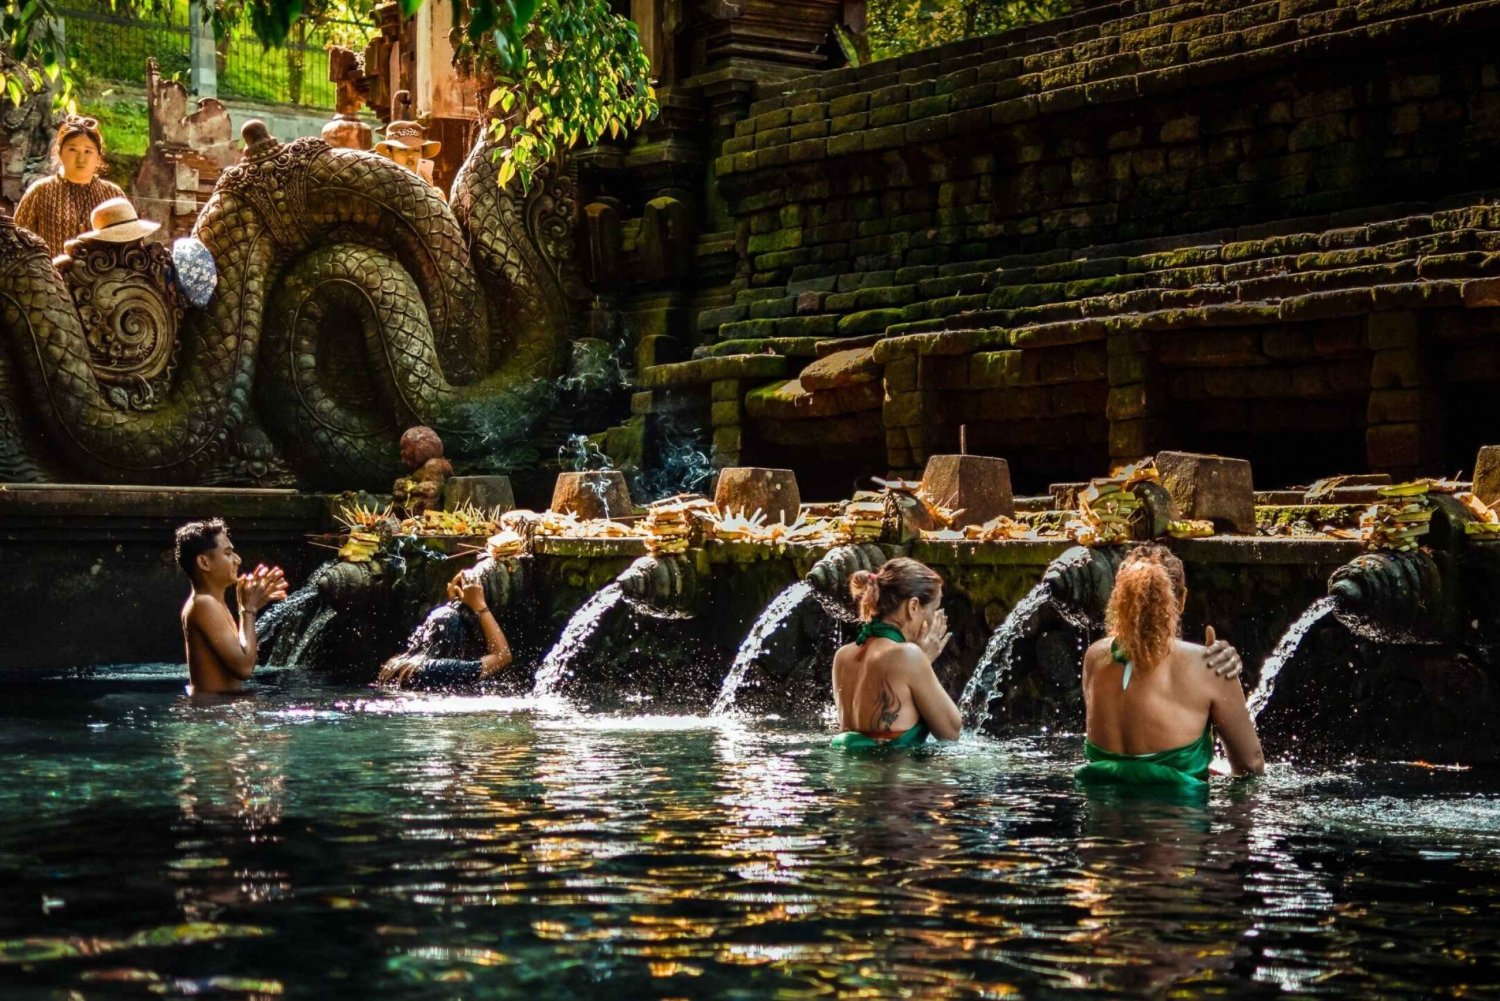 Bali: Tirta Empul, Tibumana Waterfall & Penglipuran Village